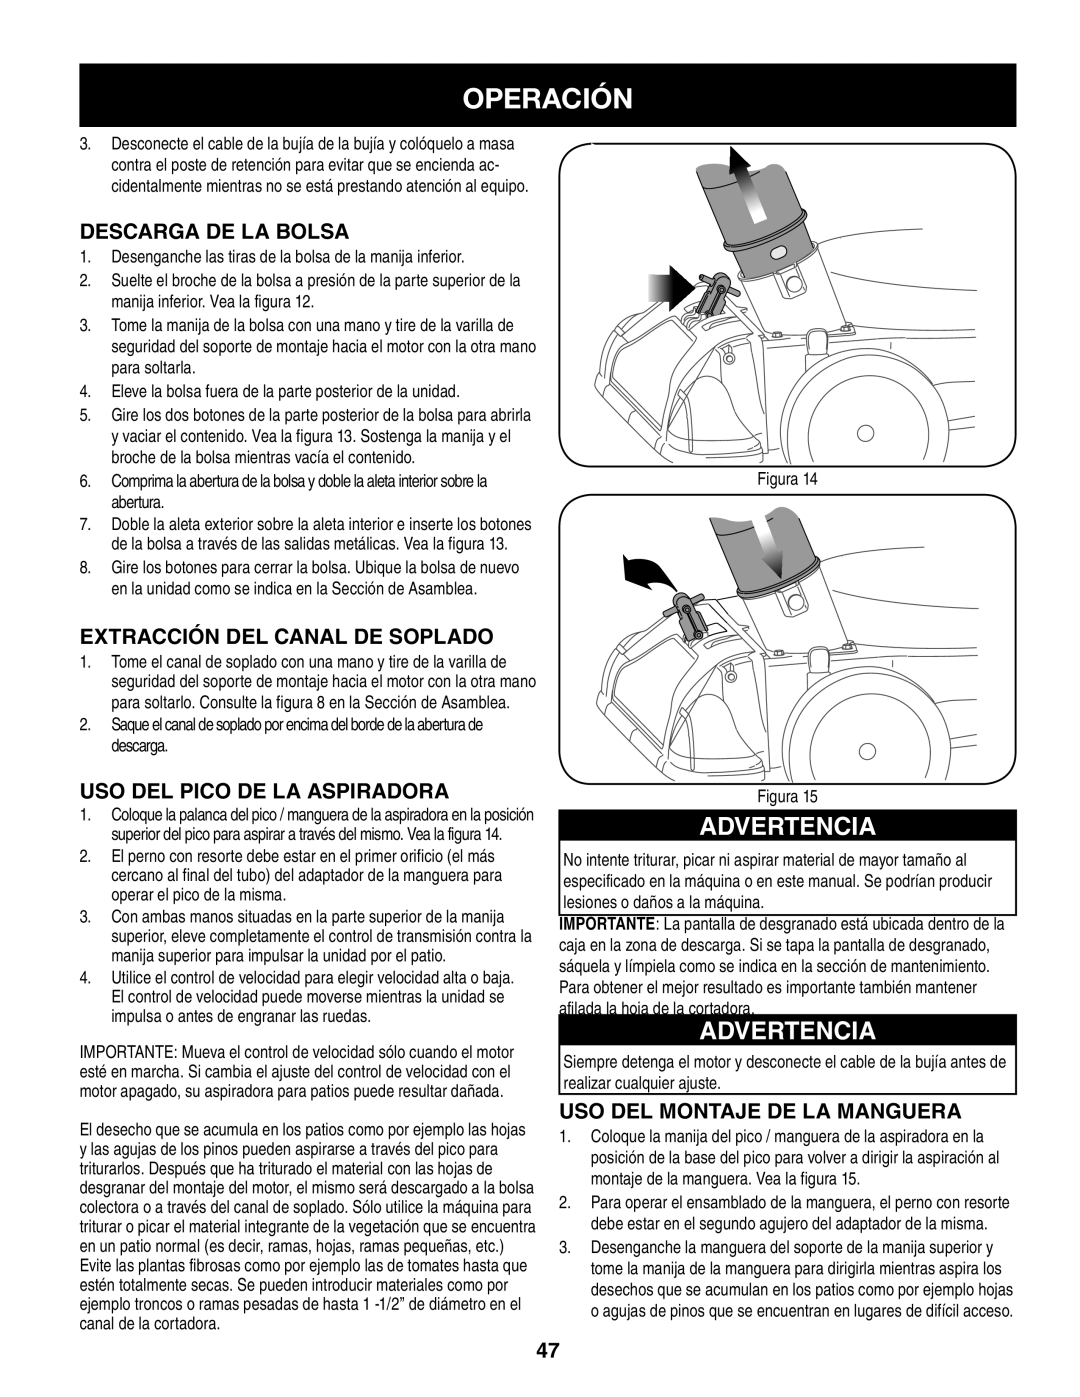 Craftsman 247.77013.0 manual Operación, Advertencia, Descarga De La Bolsa, Extracción Del Canal De Soplado 